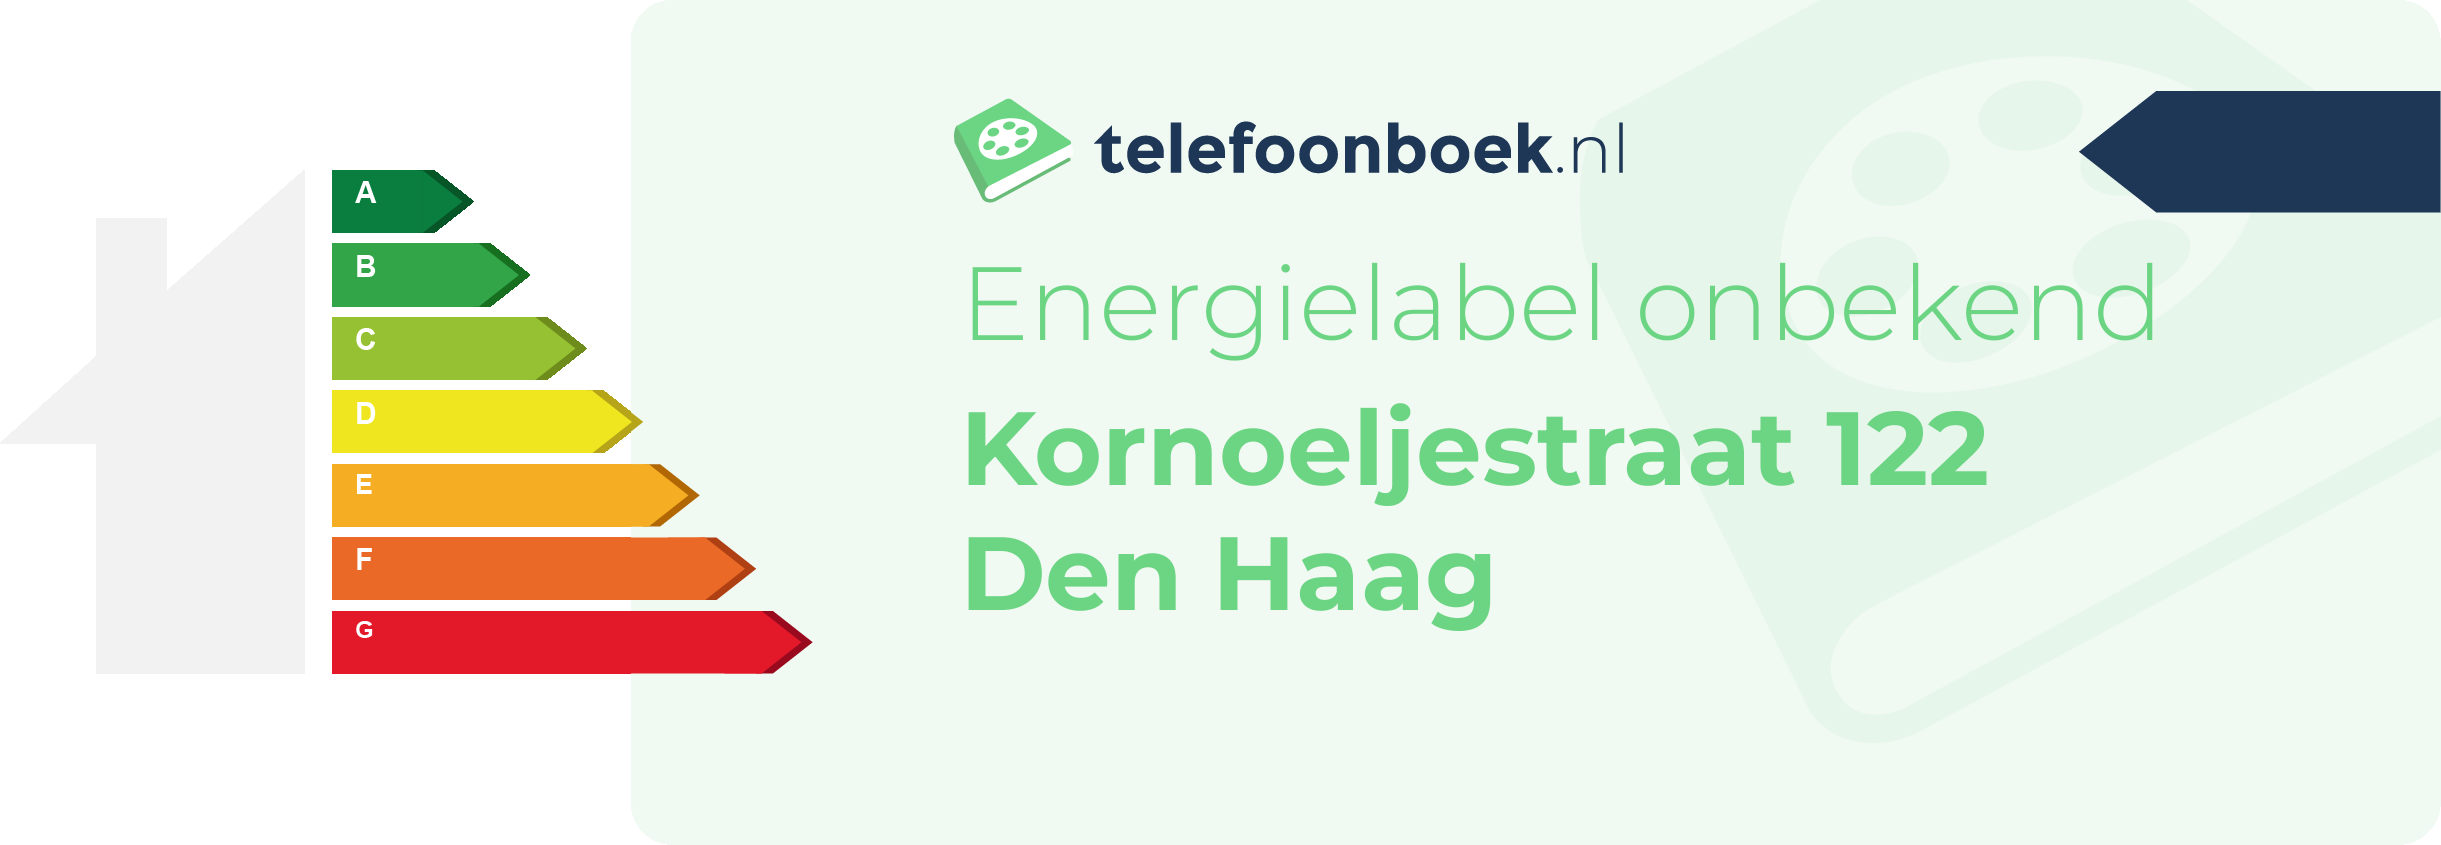 Energielabel Kornoeljestraat 122 Den Haag